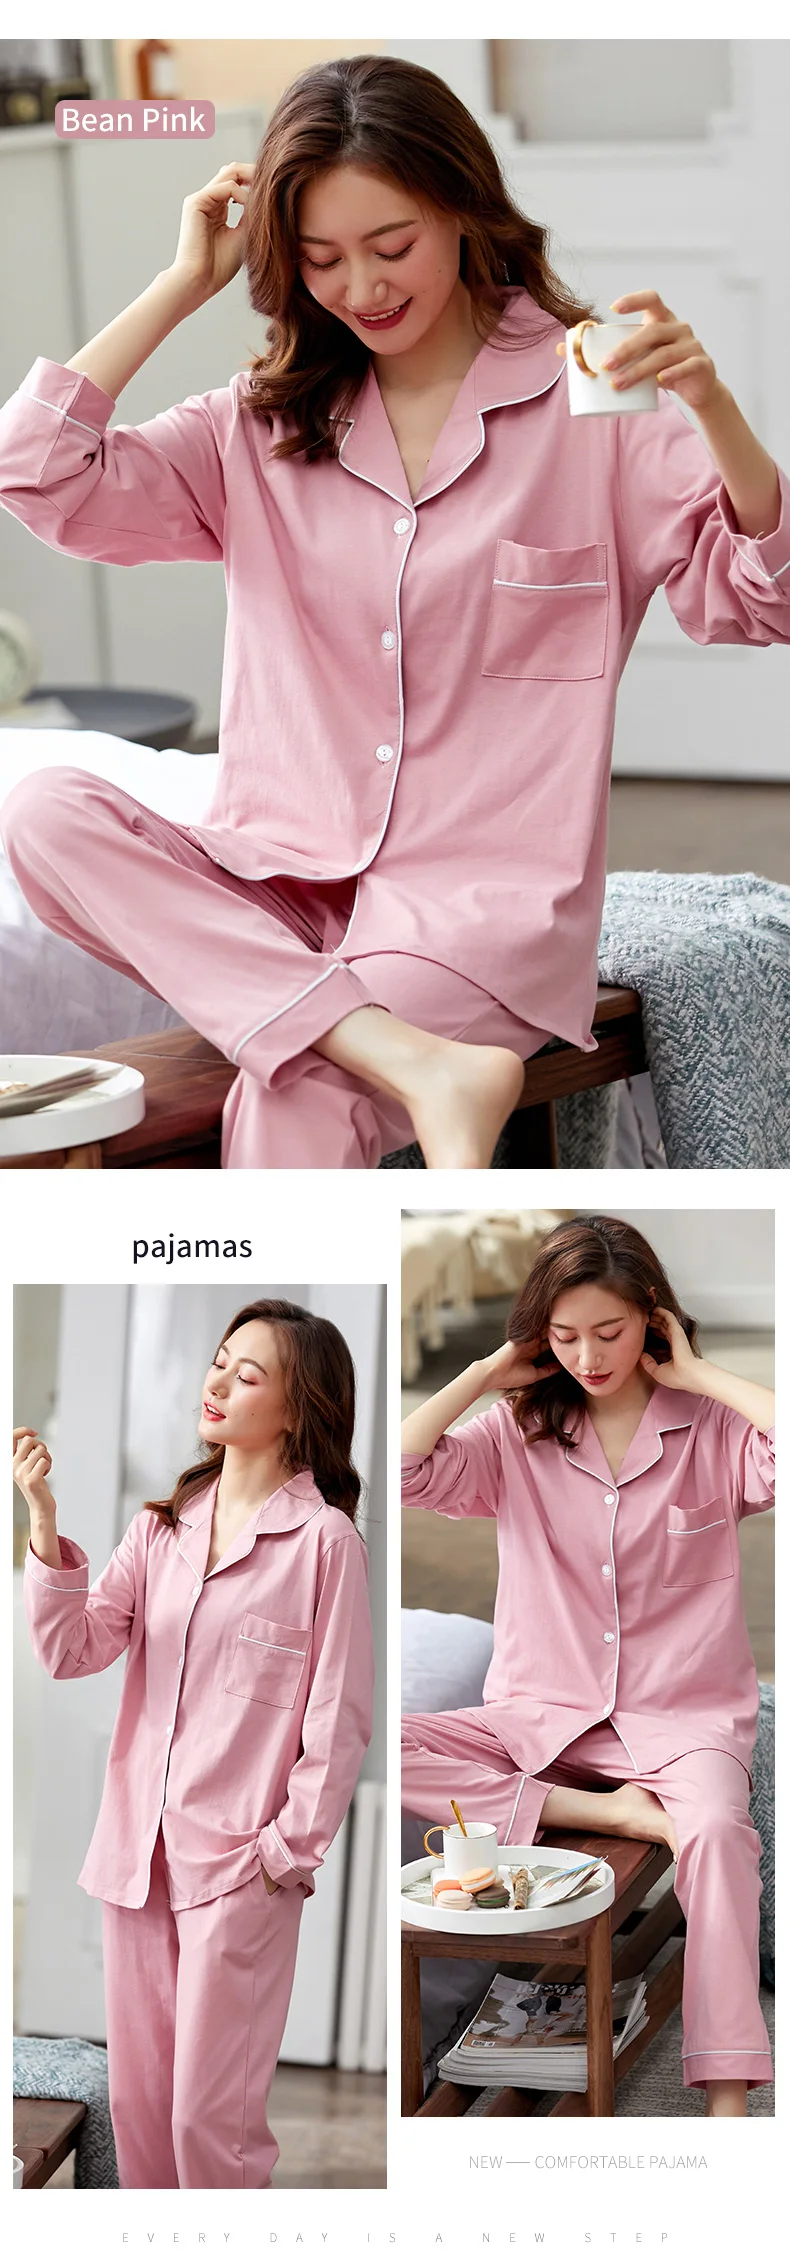 pj sets 100% Cotton Pajamas for Women PJ Full Sleeves Pijama Mujer Invierno Button-Down Winter Sleepwear Set Women White Cotton Pyjamas plus size pajamas